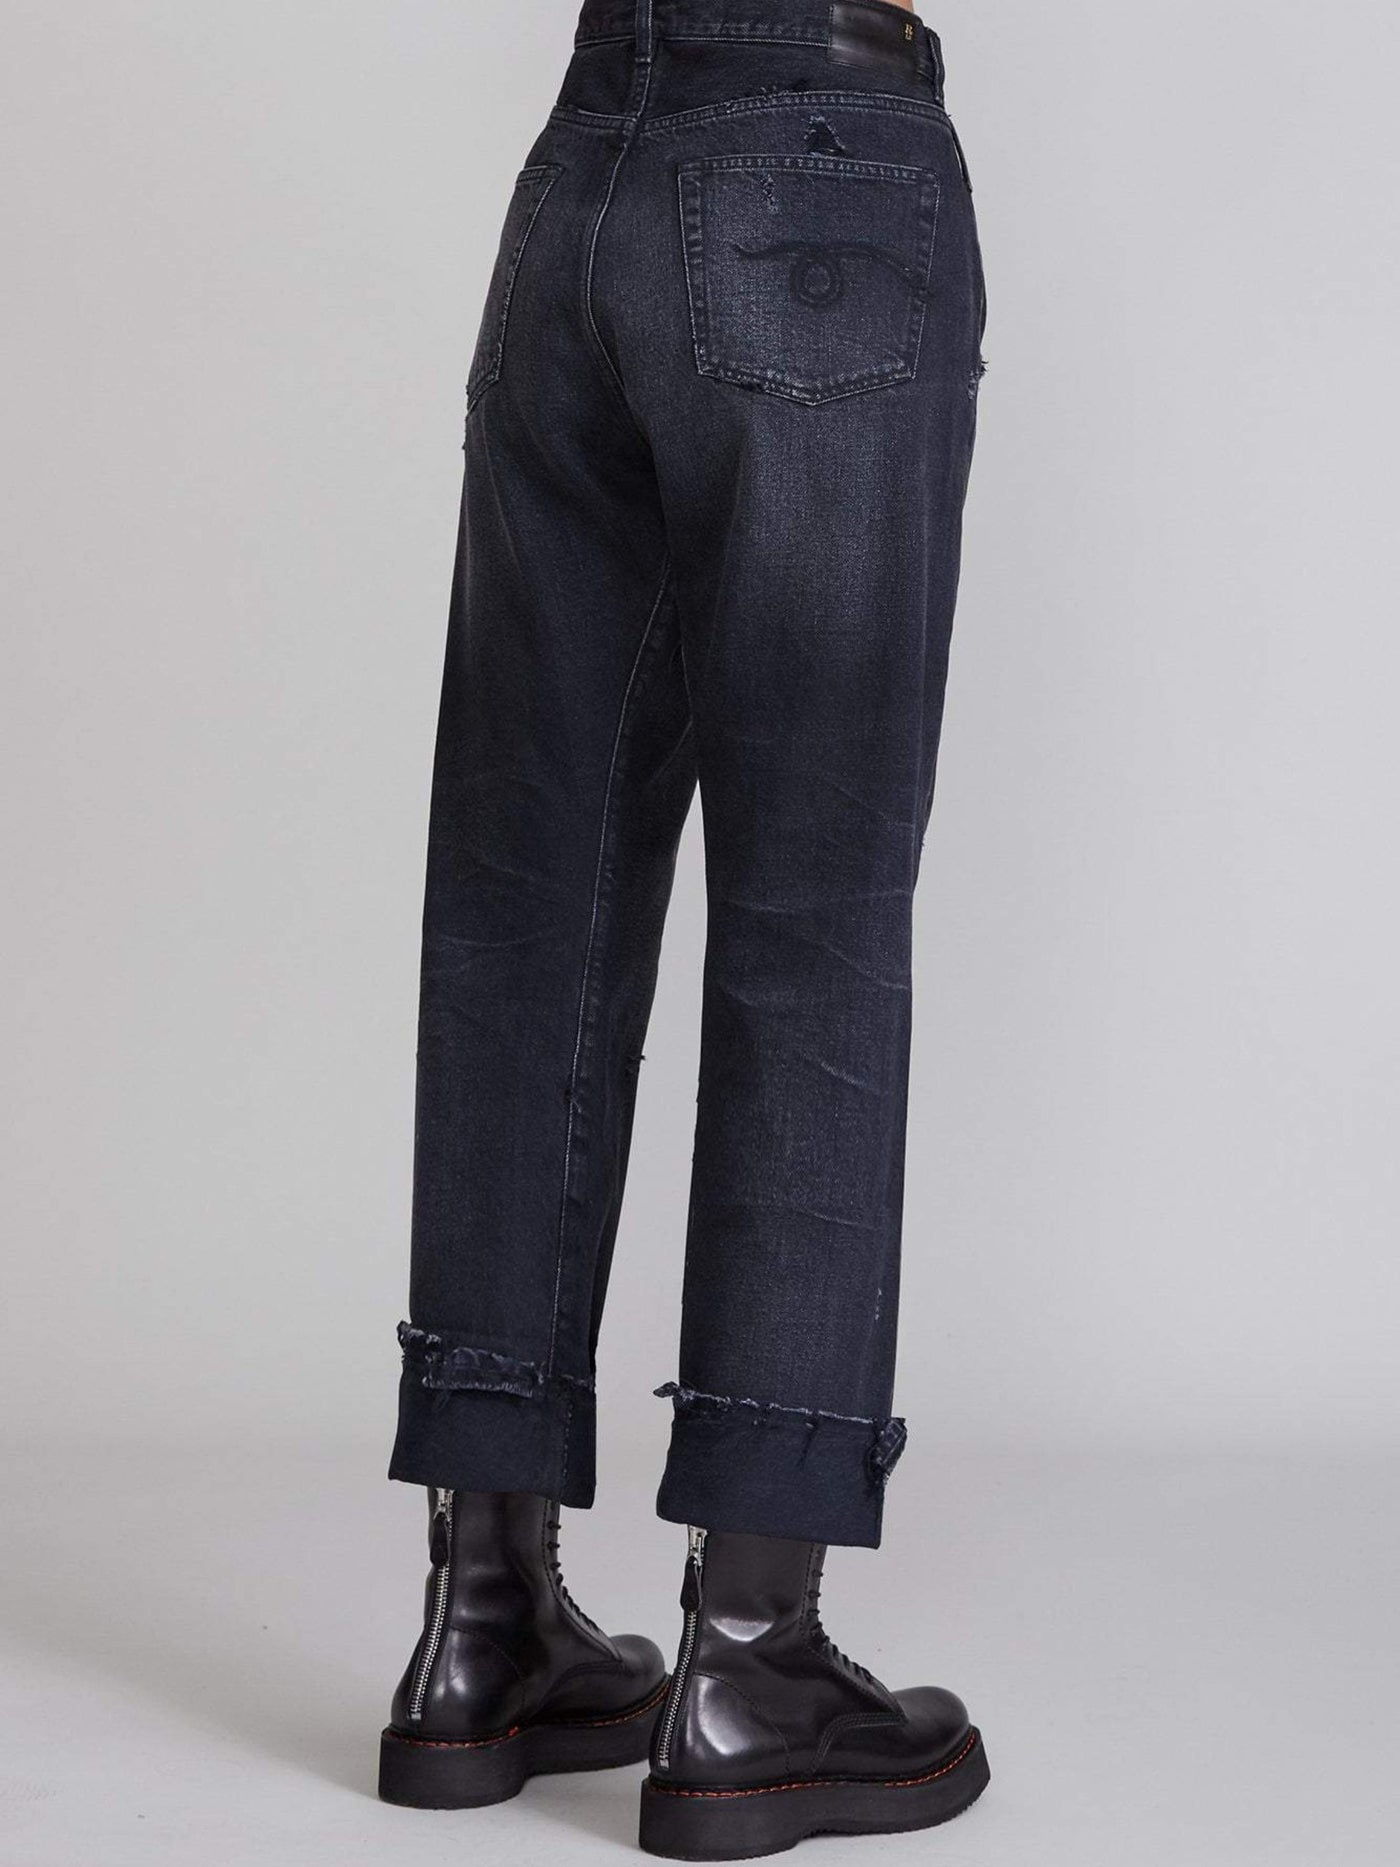 R13 Jeans | Cross Over Jeans - Jake Black | W2048-394 101A jake black-0 / ADAM/EVE